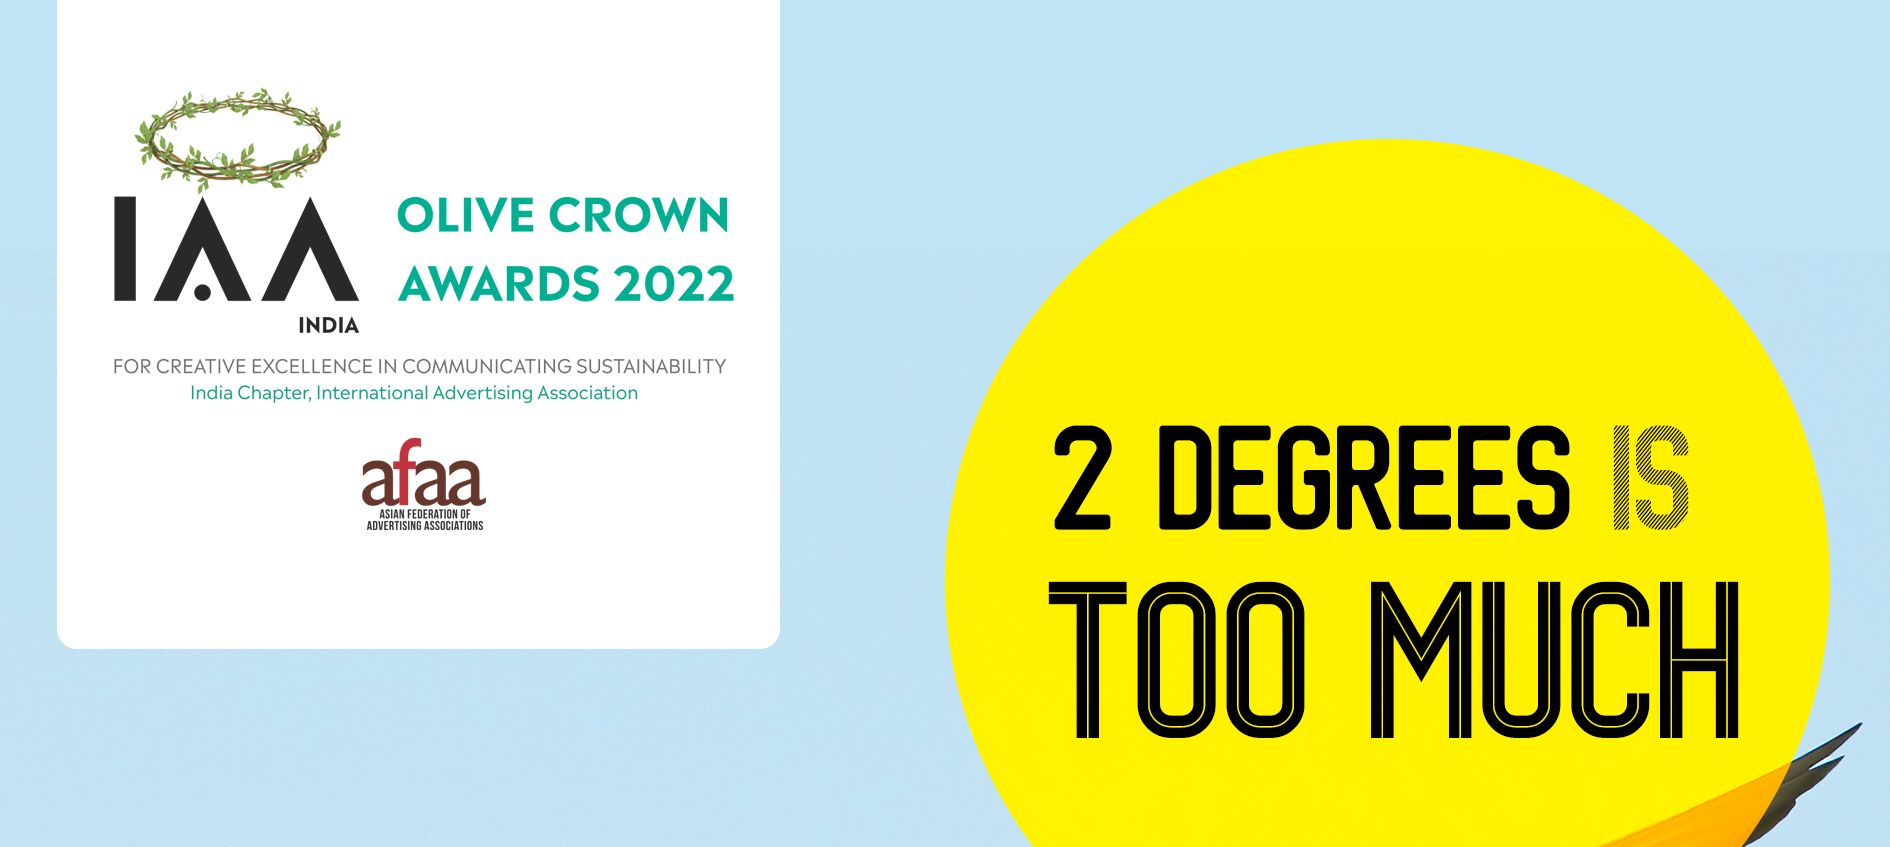 IAA Olive Crown Awards 2022